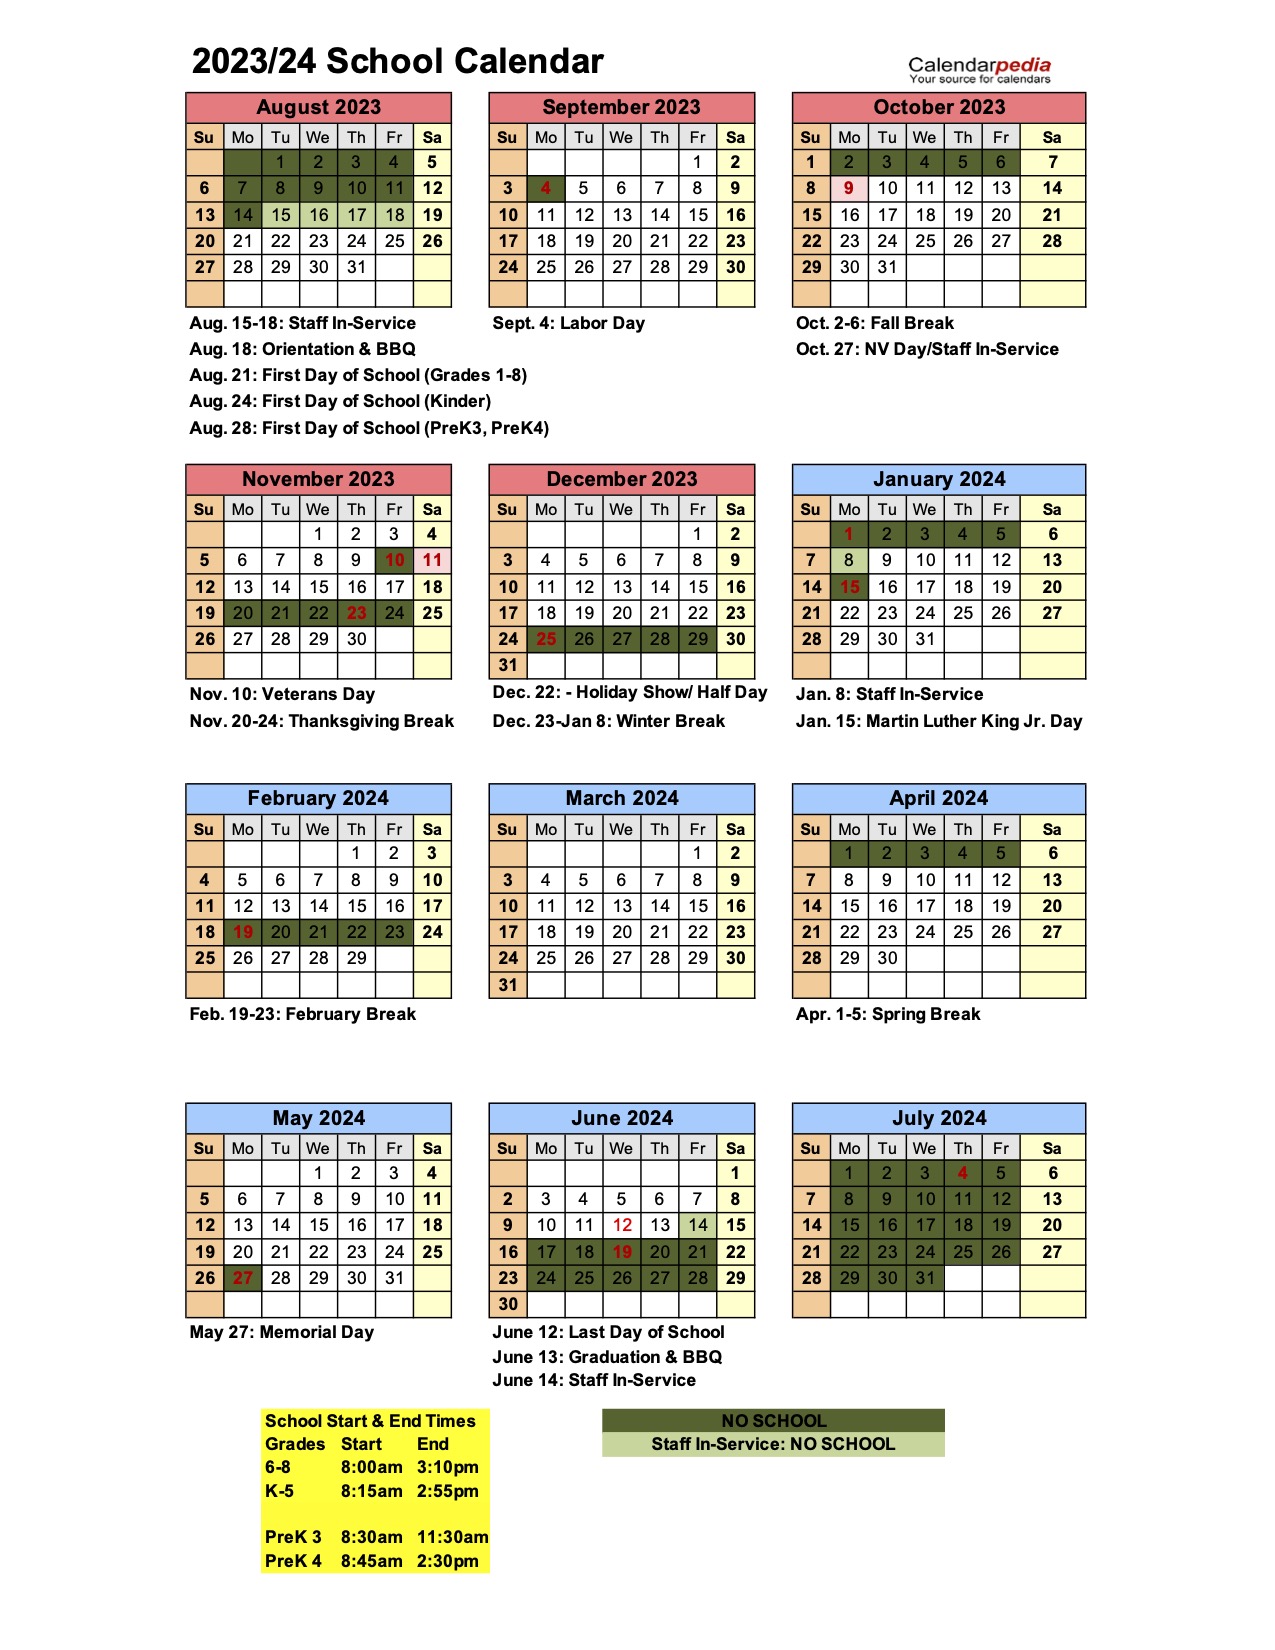 2023-2024 School Calendar - Lake Tahoe School